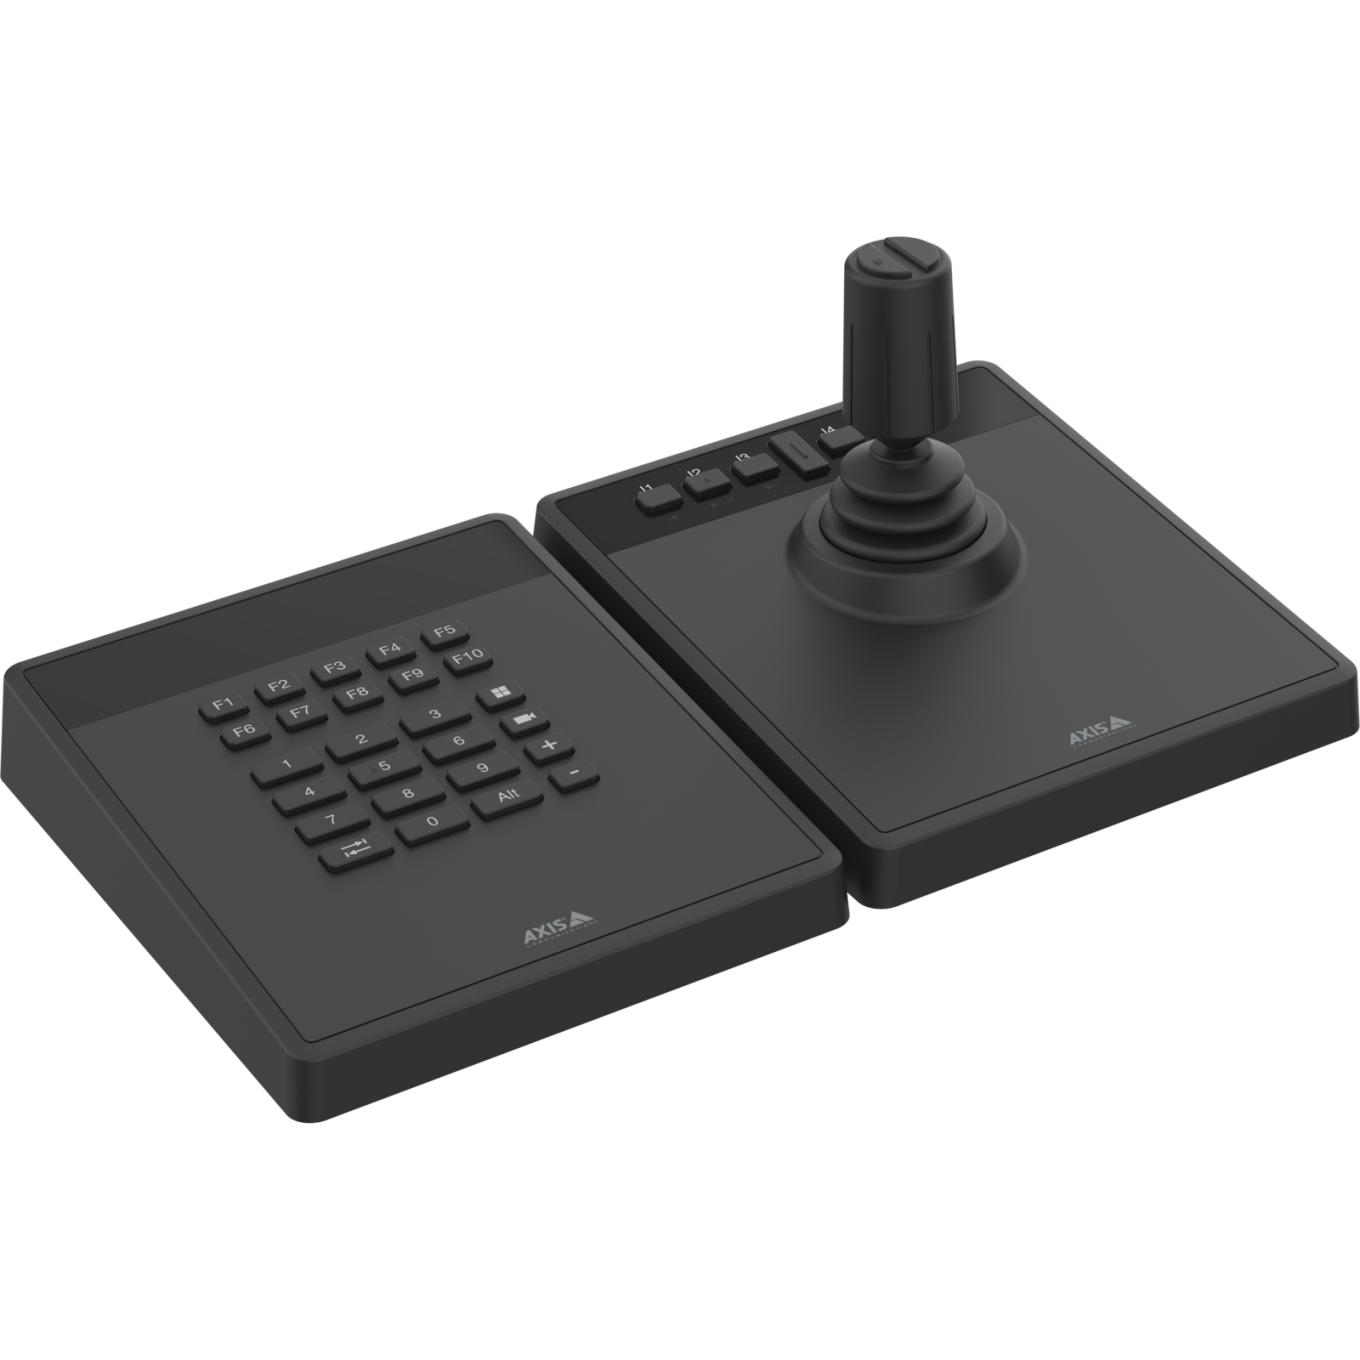 AXIS TU9001 Control Board per la gestione professionale delle telecamere e dei video, tastiera e joystick affiancati, nessun testo su display LCD